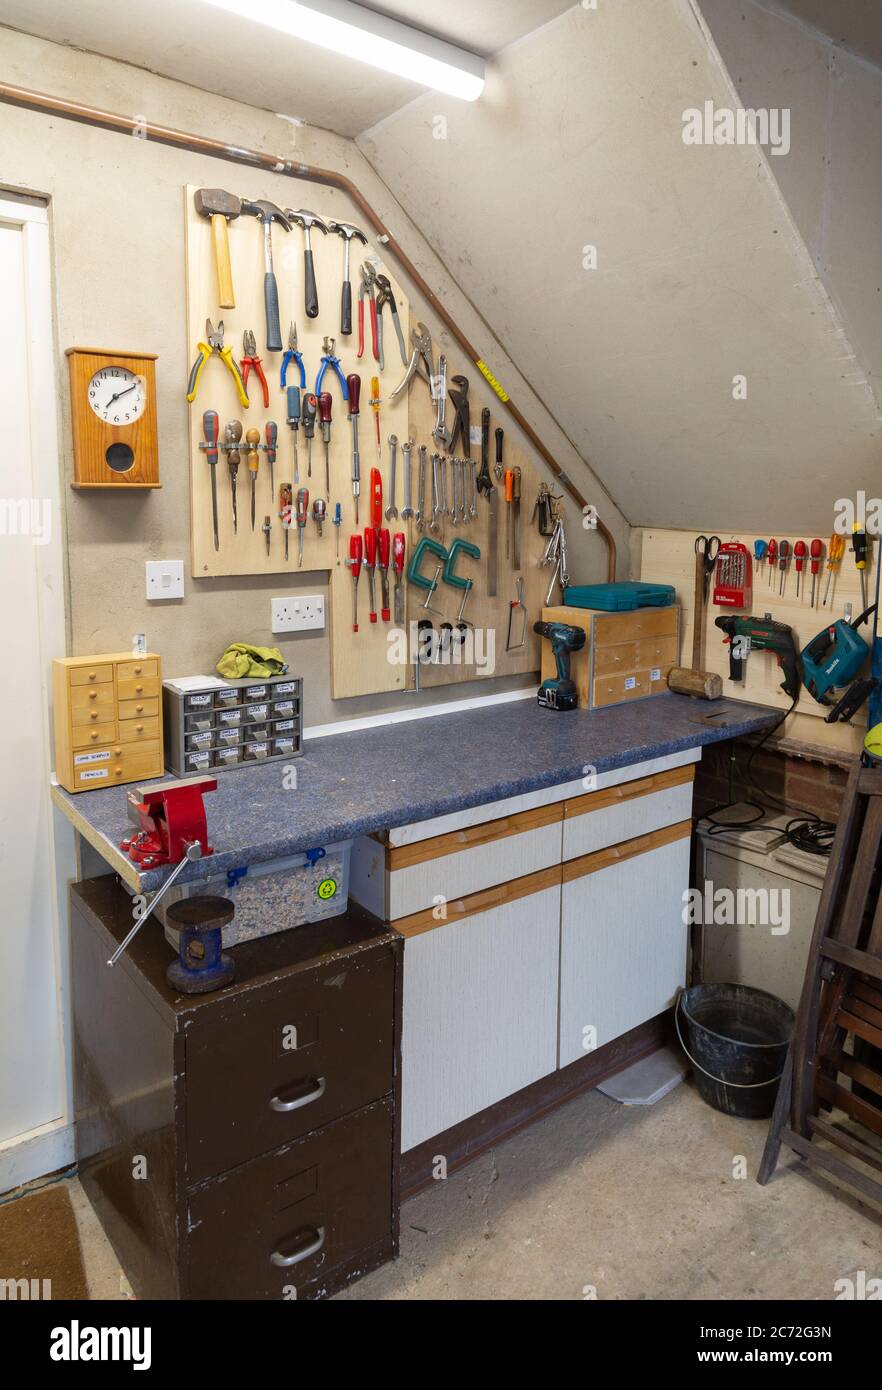 Atelier de bricolage et outils d'intérieur construits dans un garage domestique pendant le verrouillage - exemple d'activité de verrouillage; Suffolk Angleterre Royaume-Uni Banque D'Images